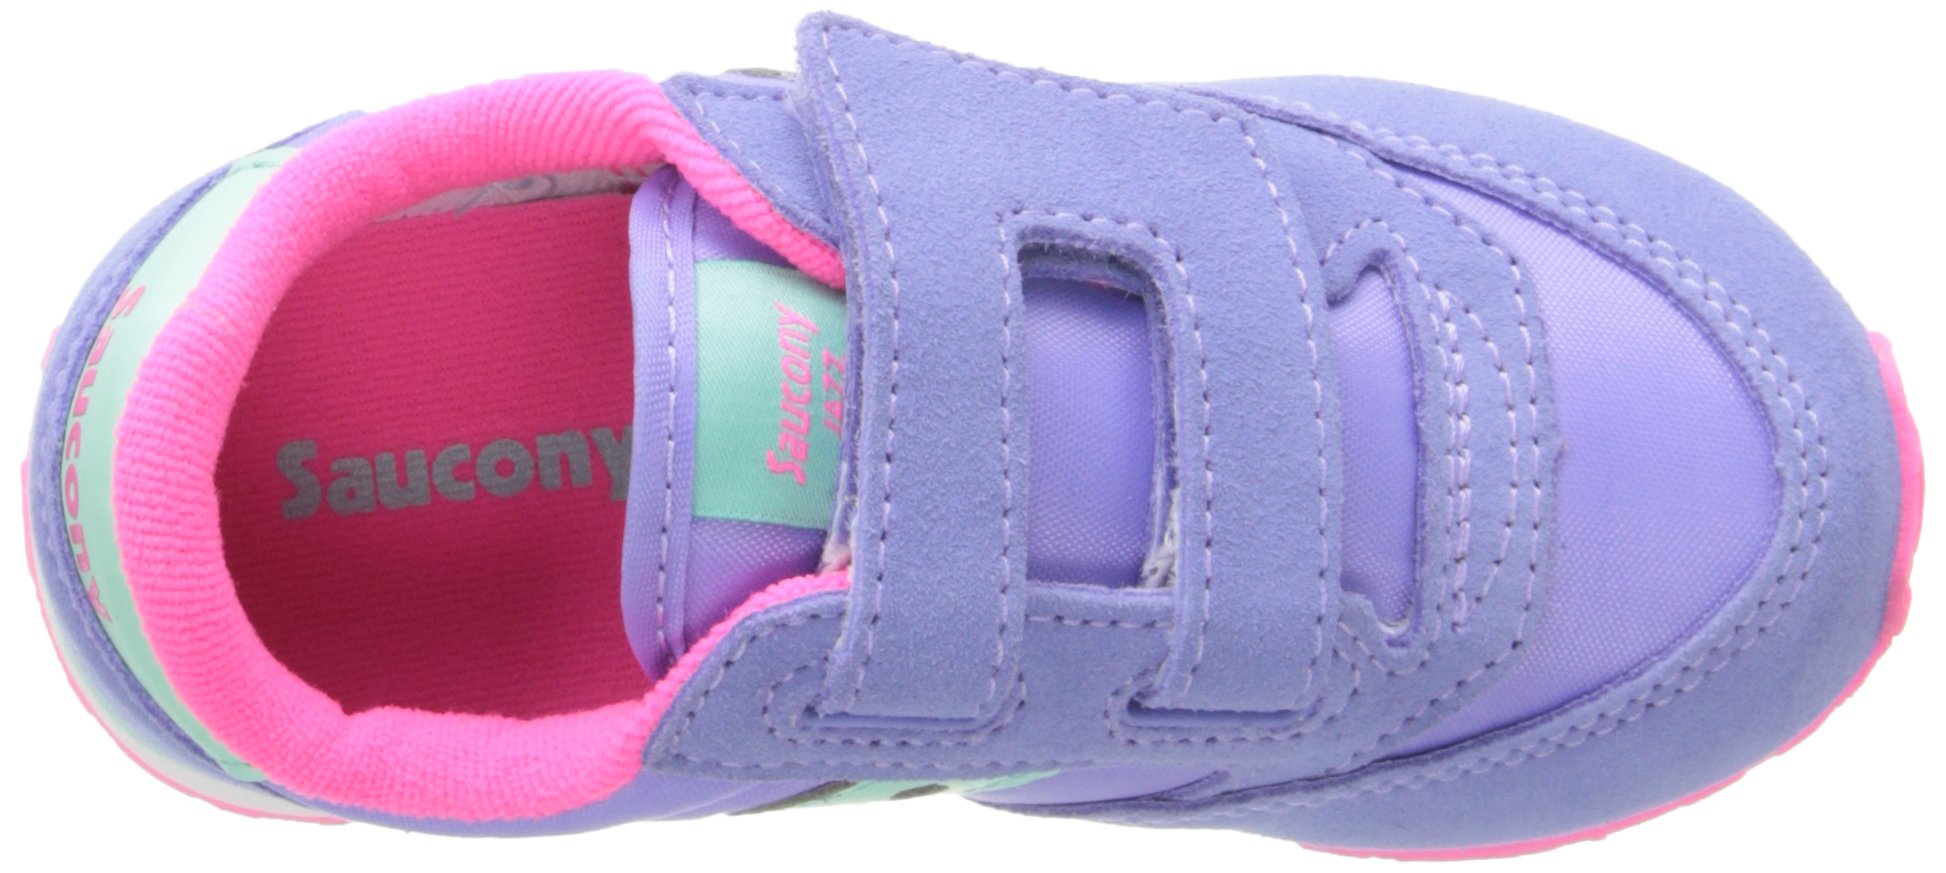 Saucony Unisex-Child Baby Jazz Hook & Loop Sneaker